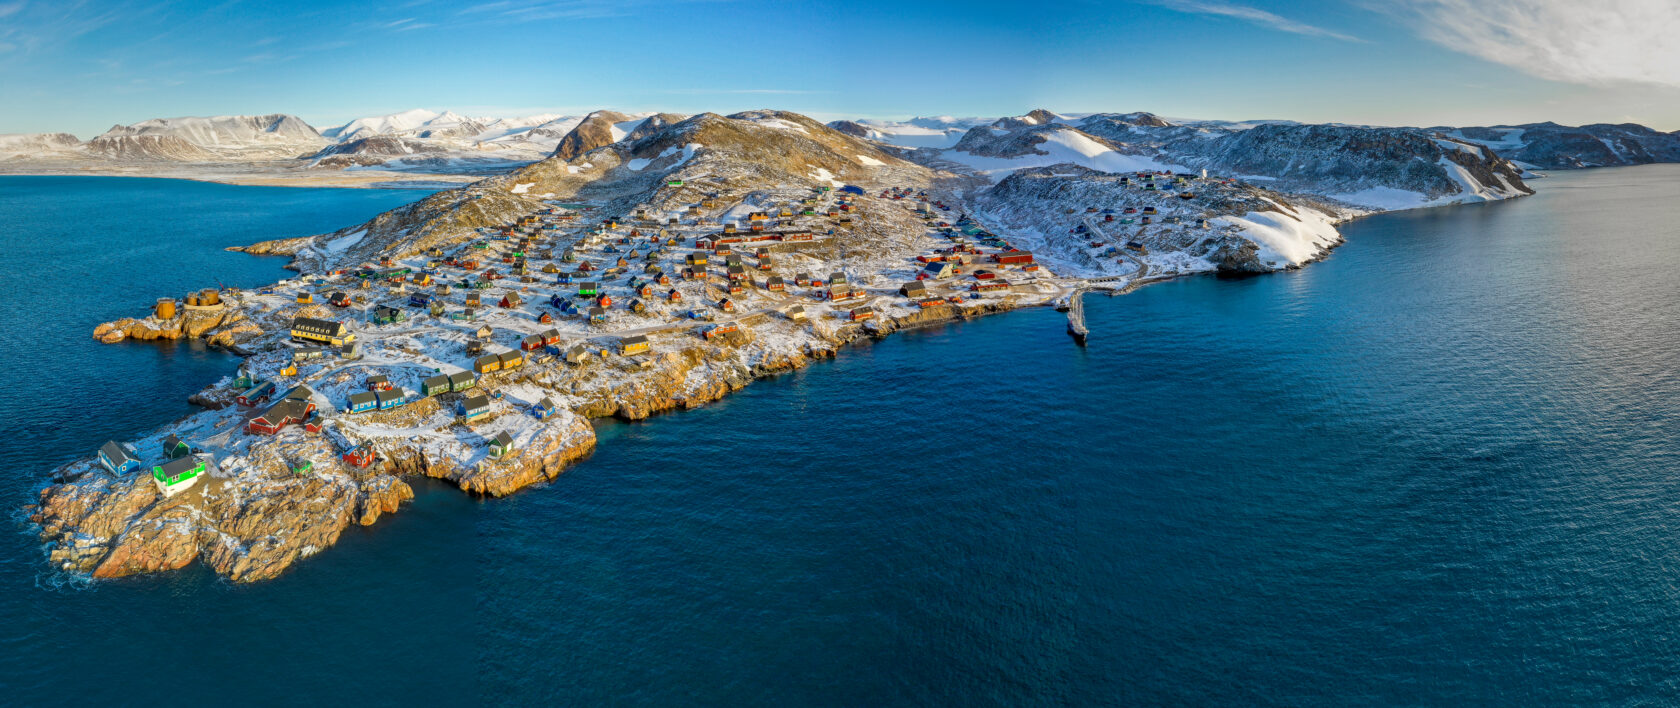 Ittoqqortoormiit, Scoresbysund, Greenland